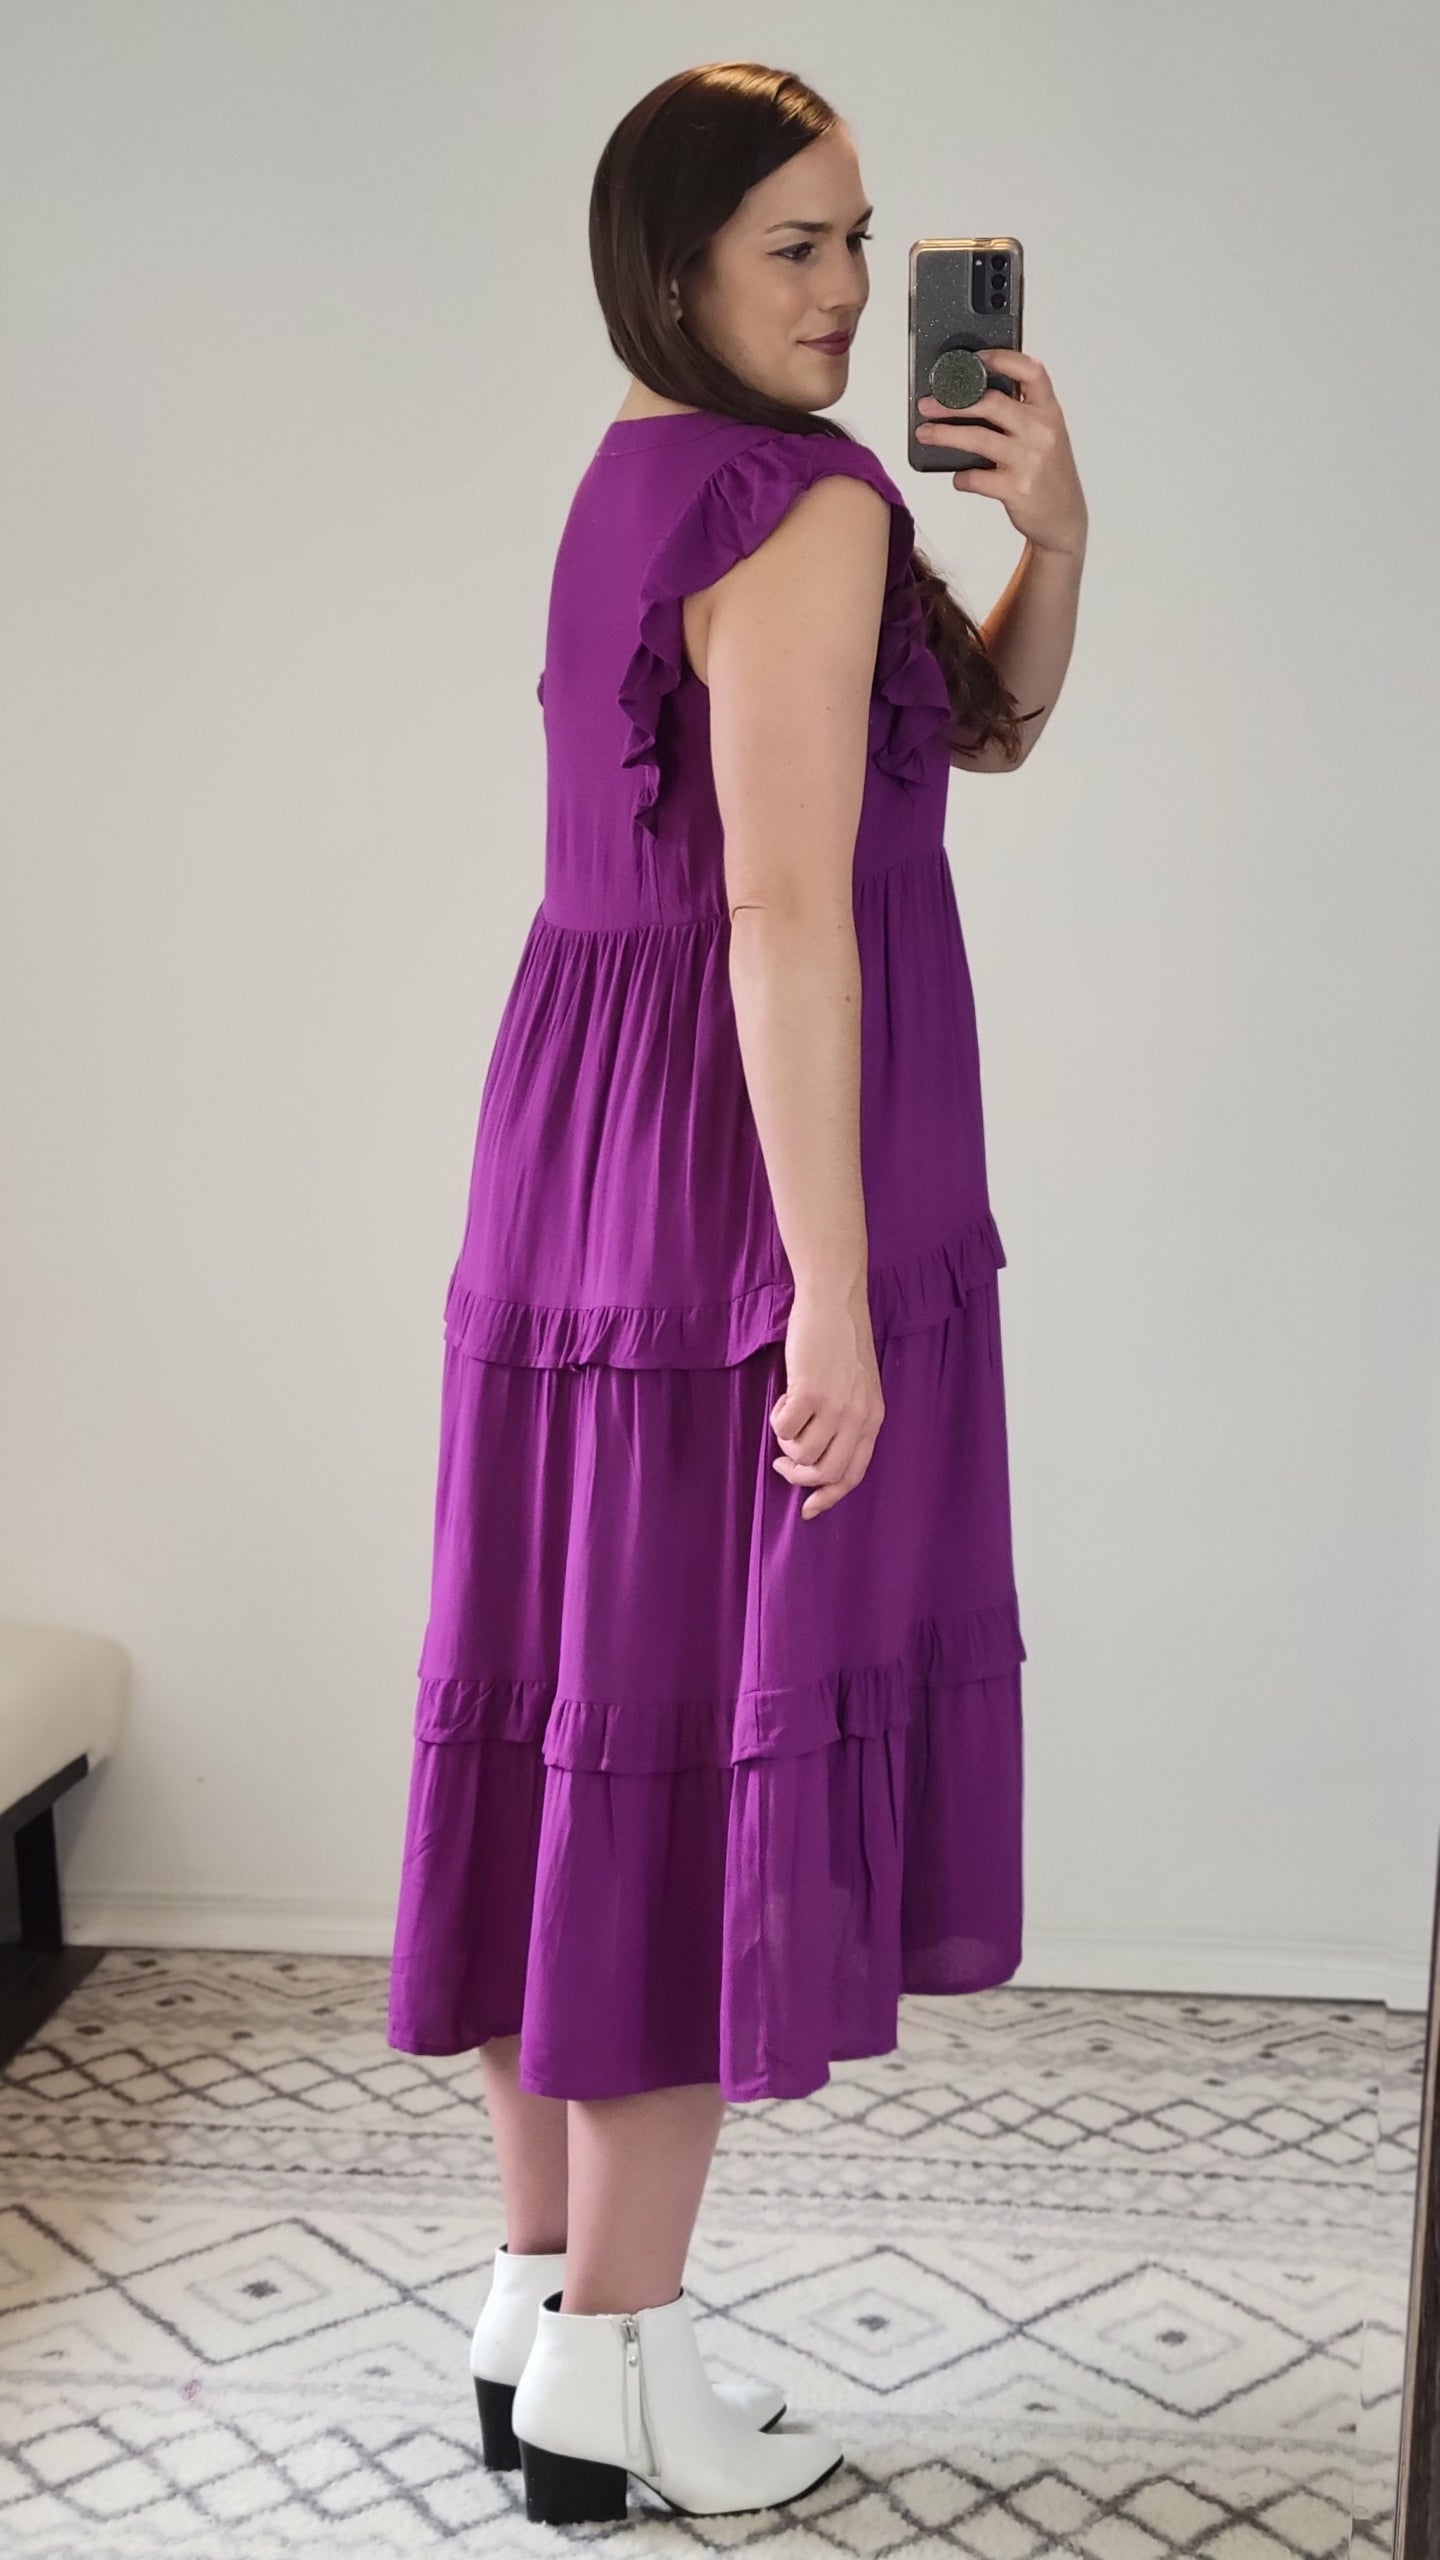 Violet Midi Dress with Pockets "Violet" (S)